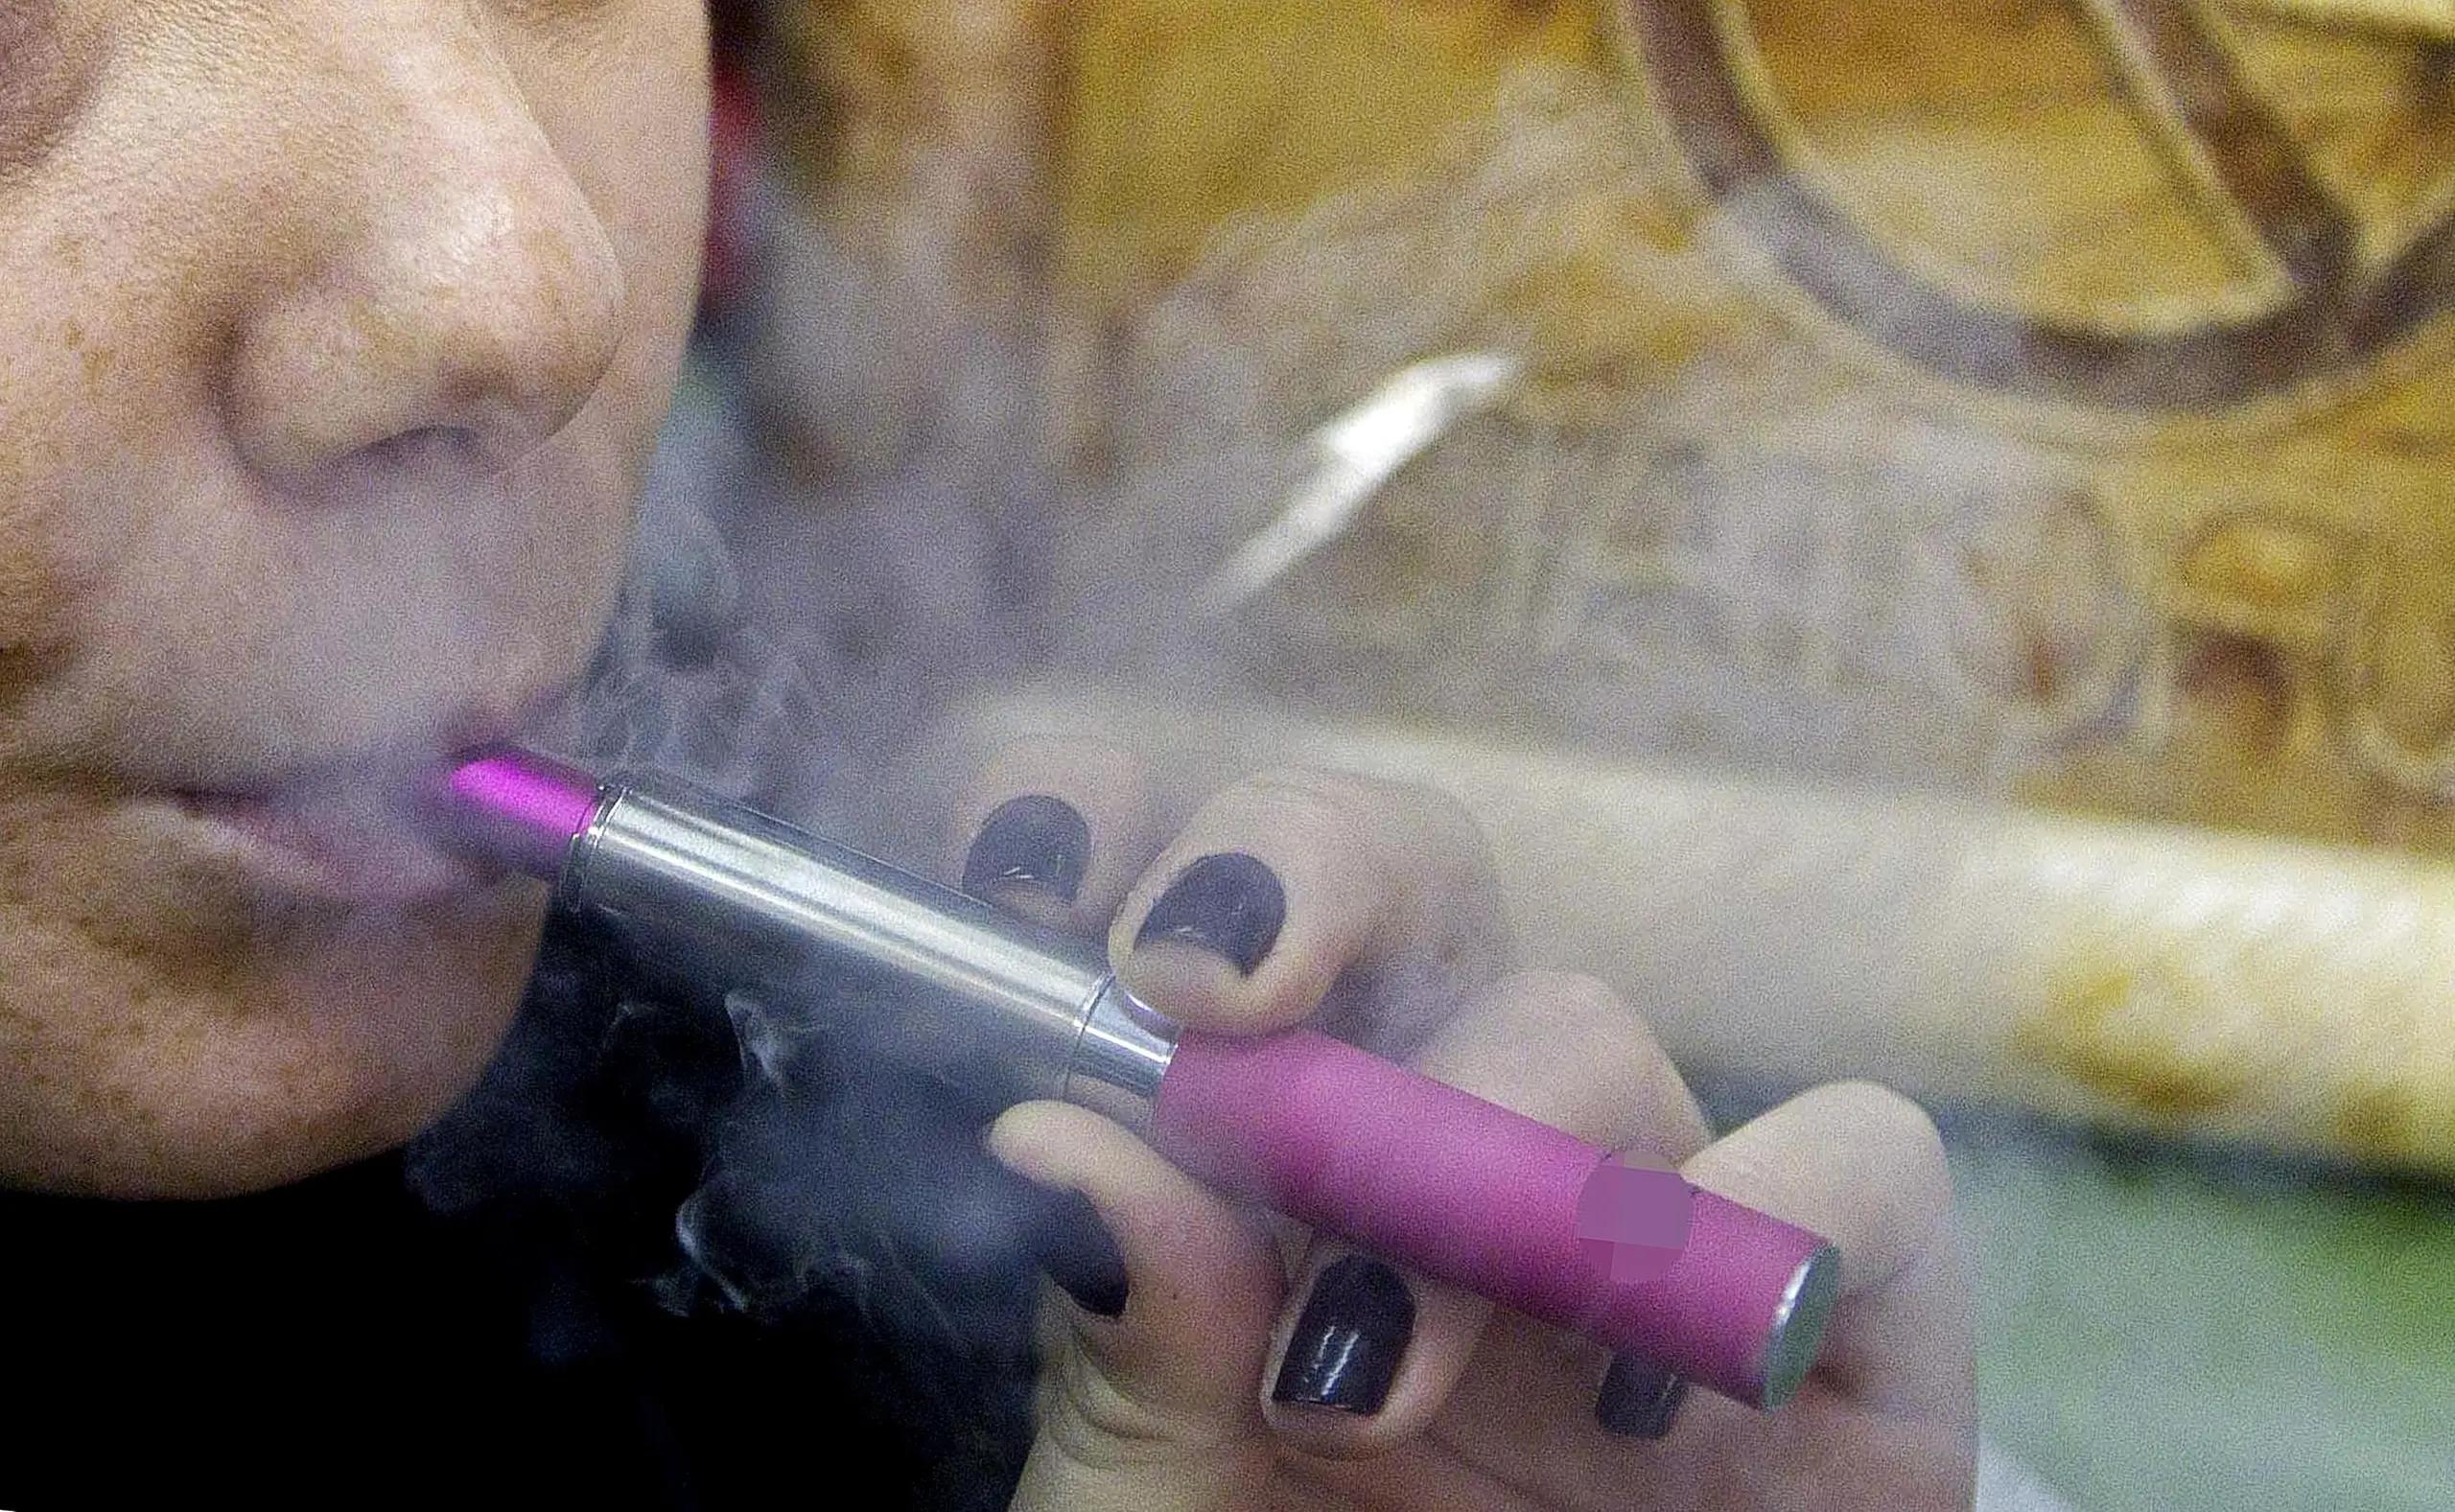 Vicenza, anche gli spinelli diventano elettronici: sequestrati 133  dispositivi per fumare “usa e getta” caricati con la cannabis